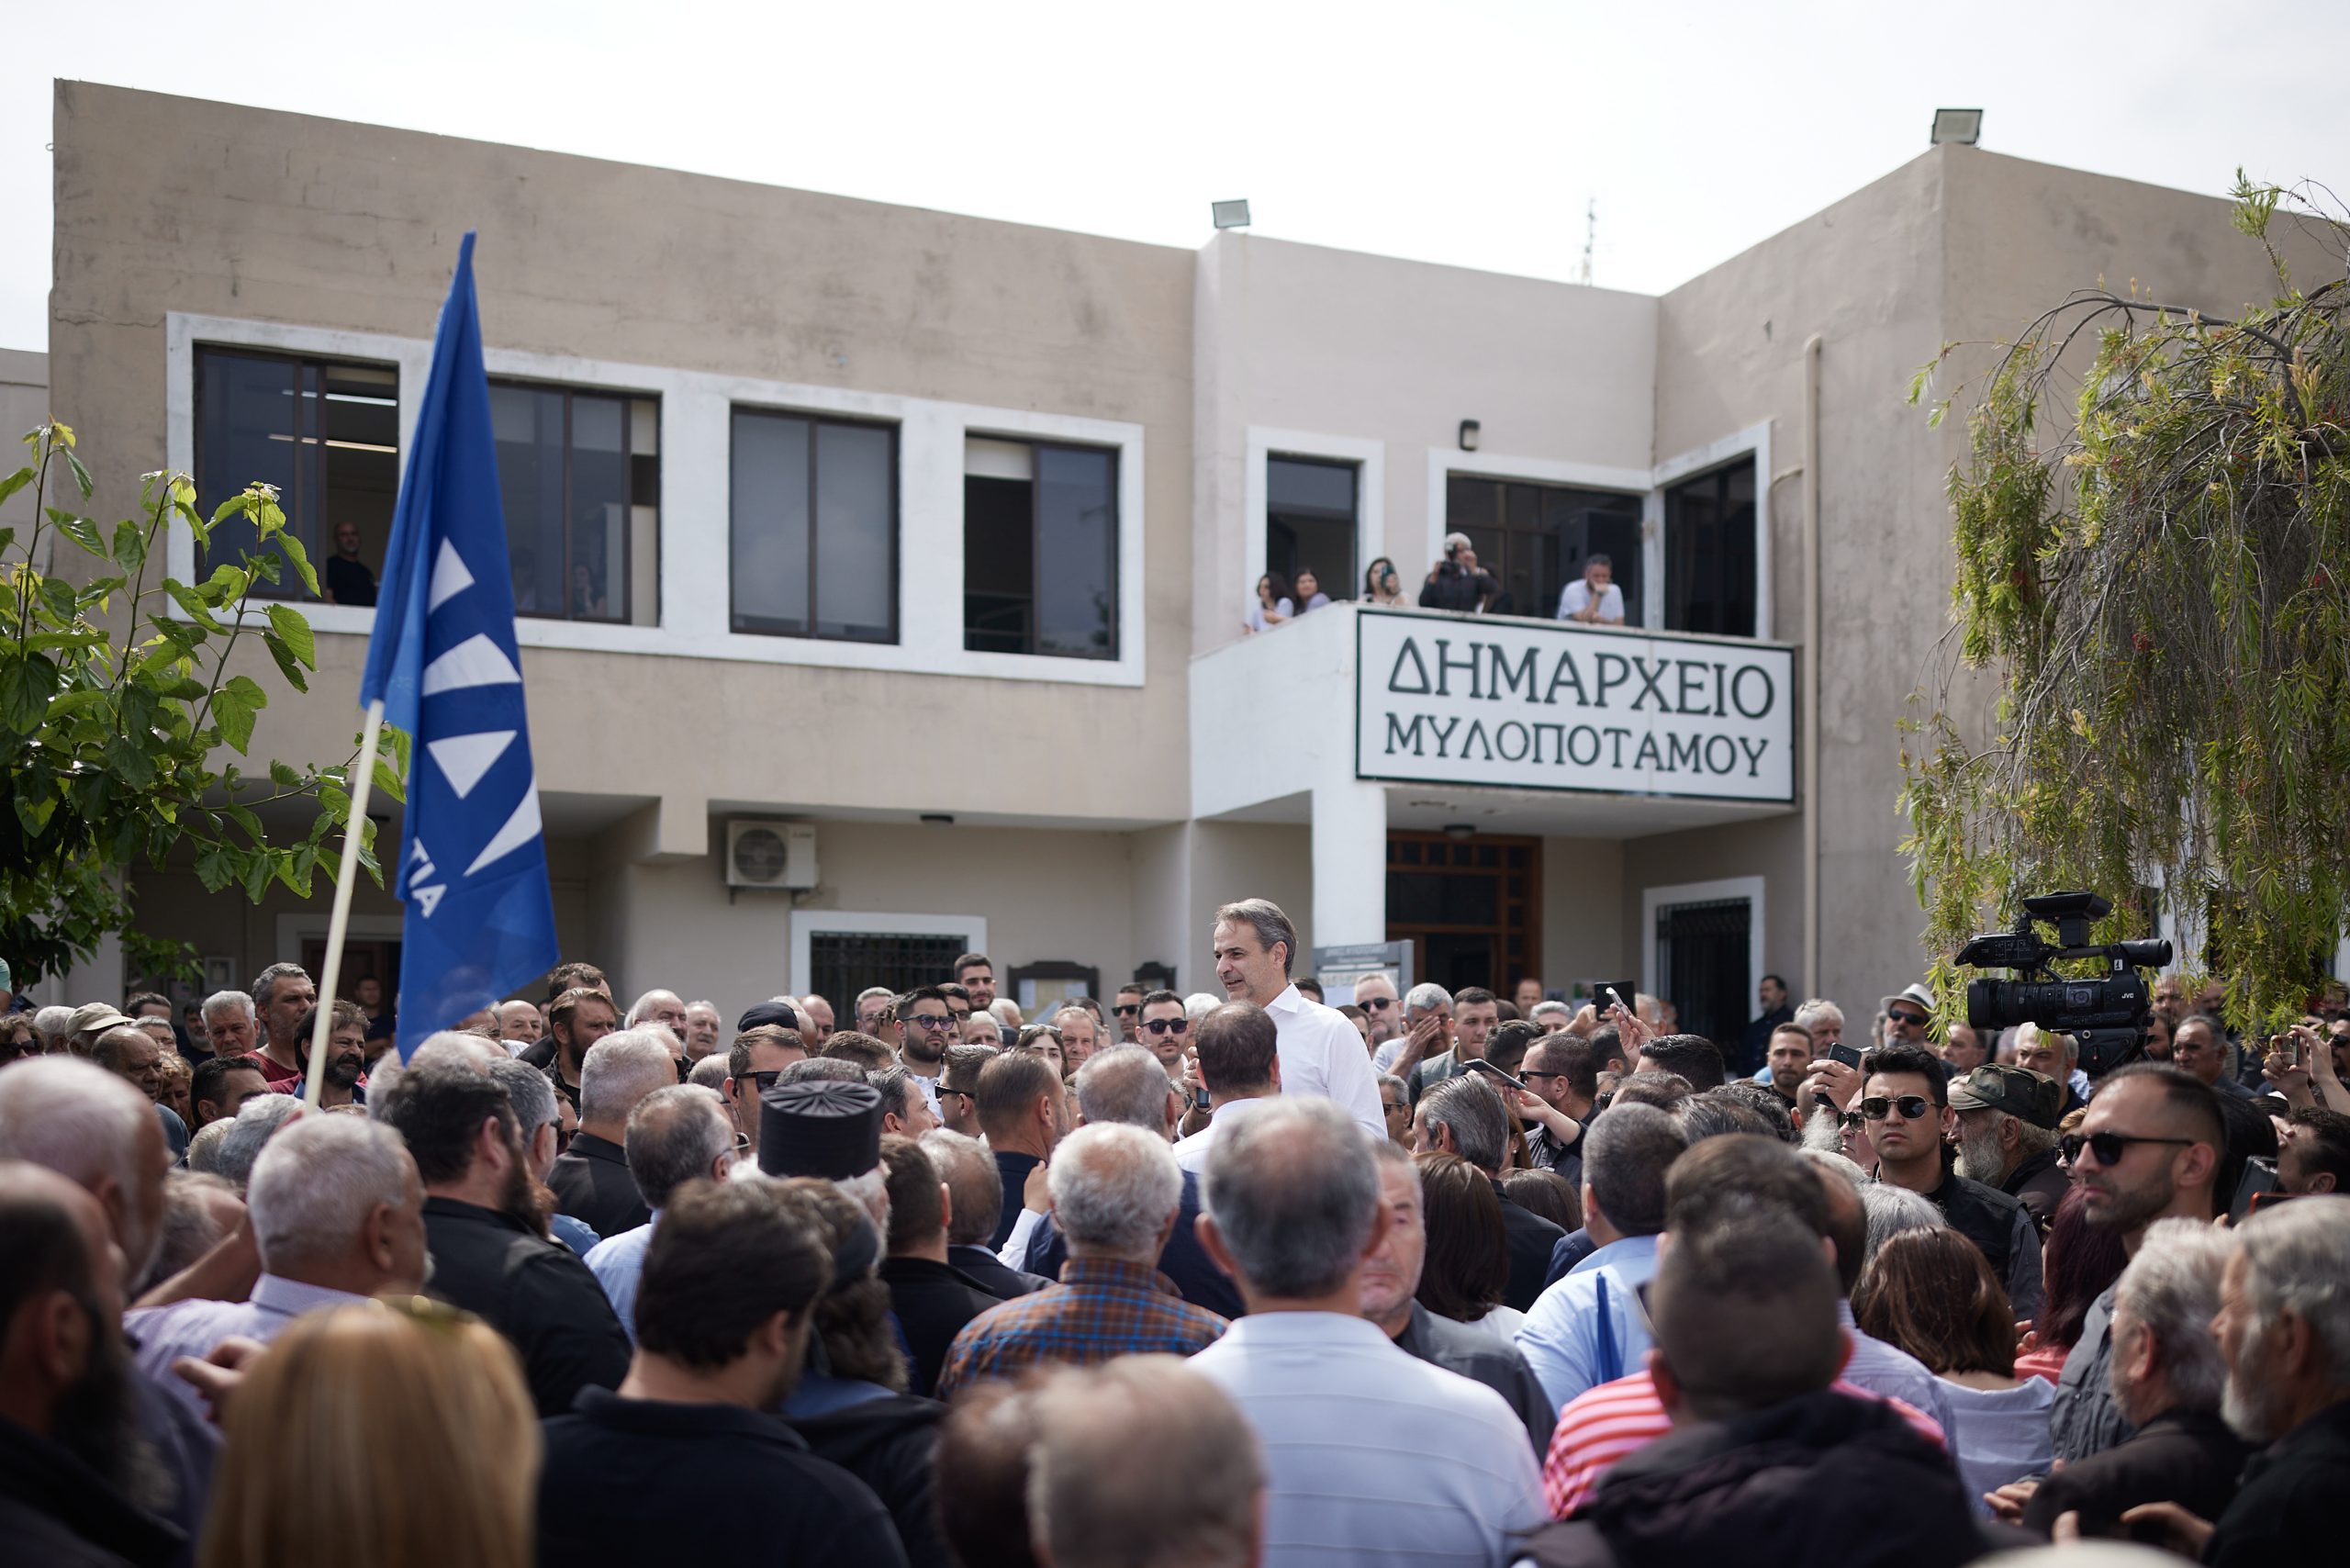 Κ. Μητσοτάκης από Μυλοπόταμο: Μία σταθερή κυβέρνηση σήμερα είναι προϋπόθεση ευημερίας για την ελληνική κοινωνία